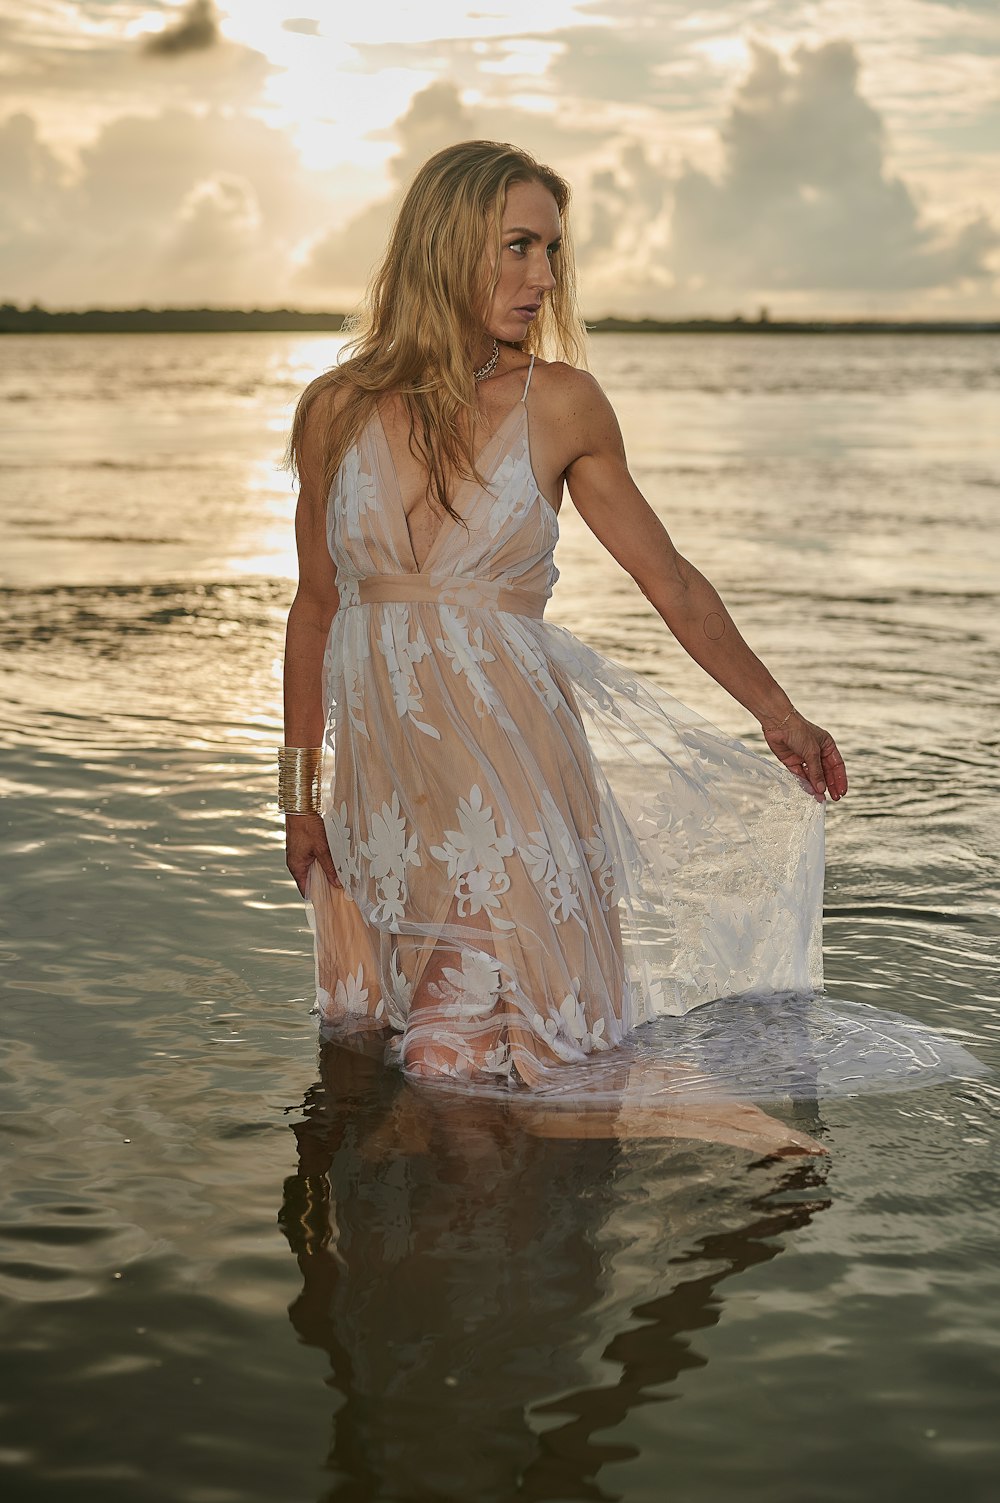 하얀 드레스를 입은 사람이 물에 서 있다